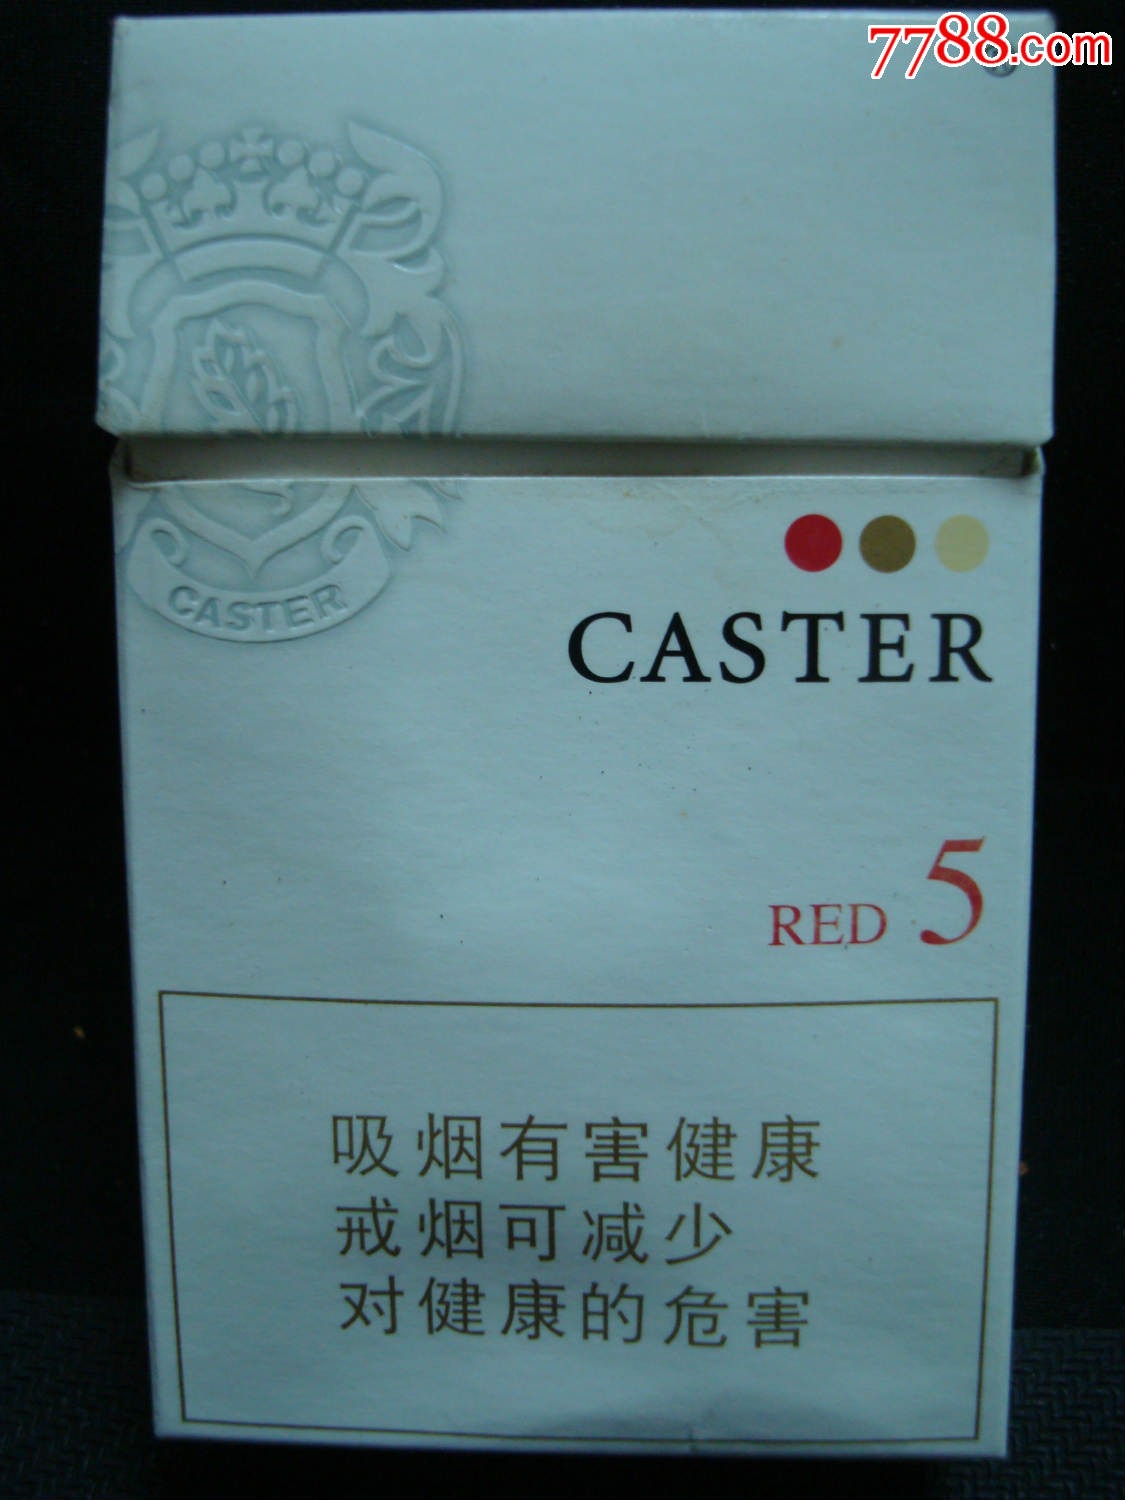 日本――caster――5